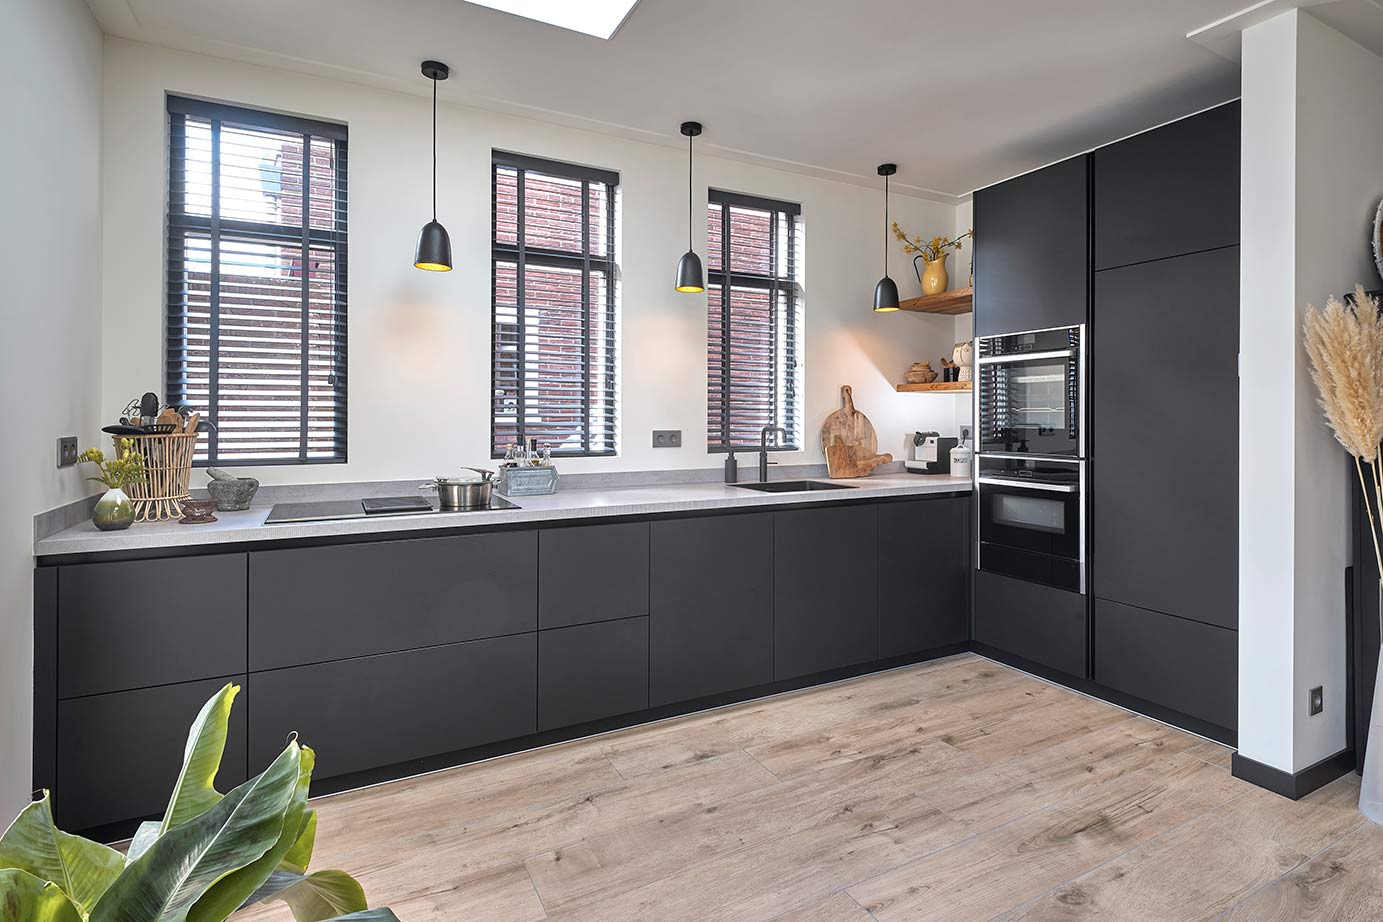 Foto : Mat zwarte keuken met kastenwand past perfect